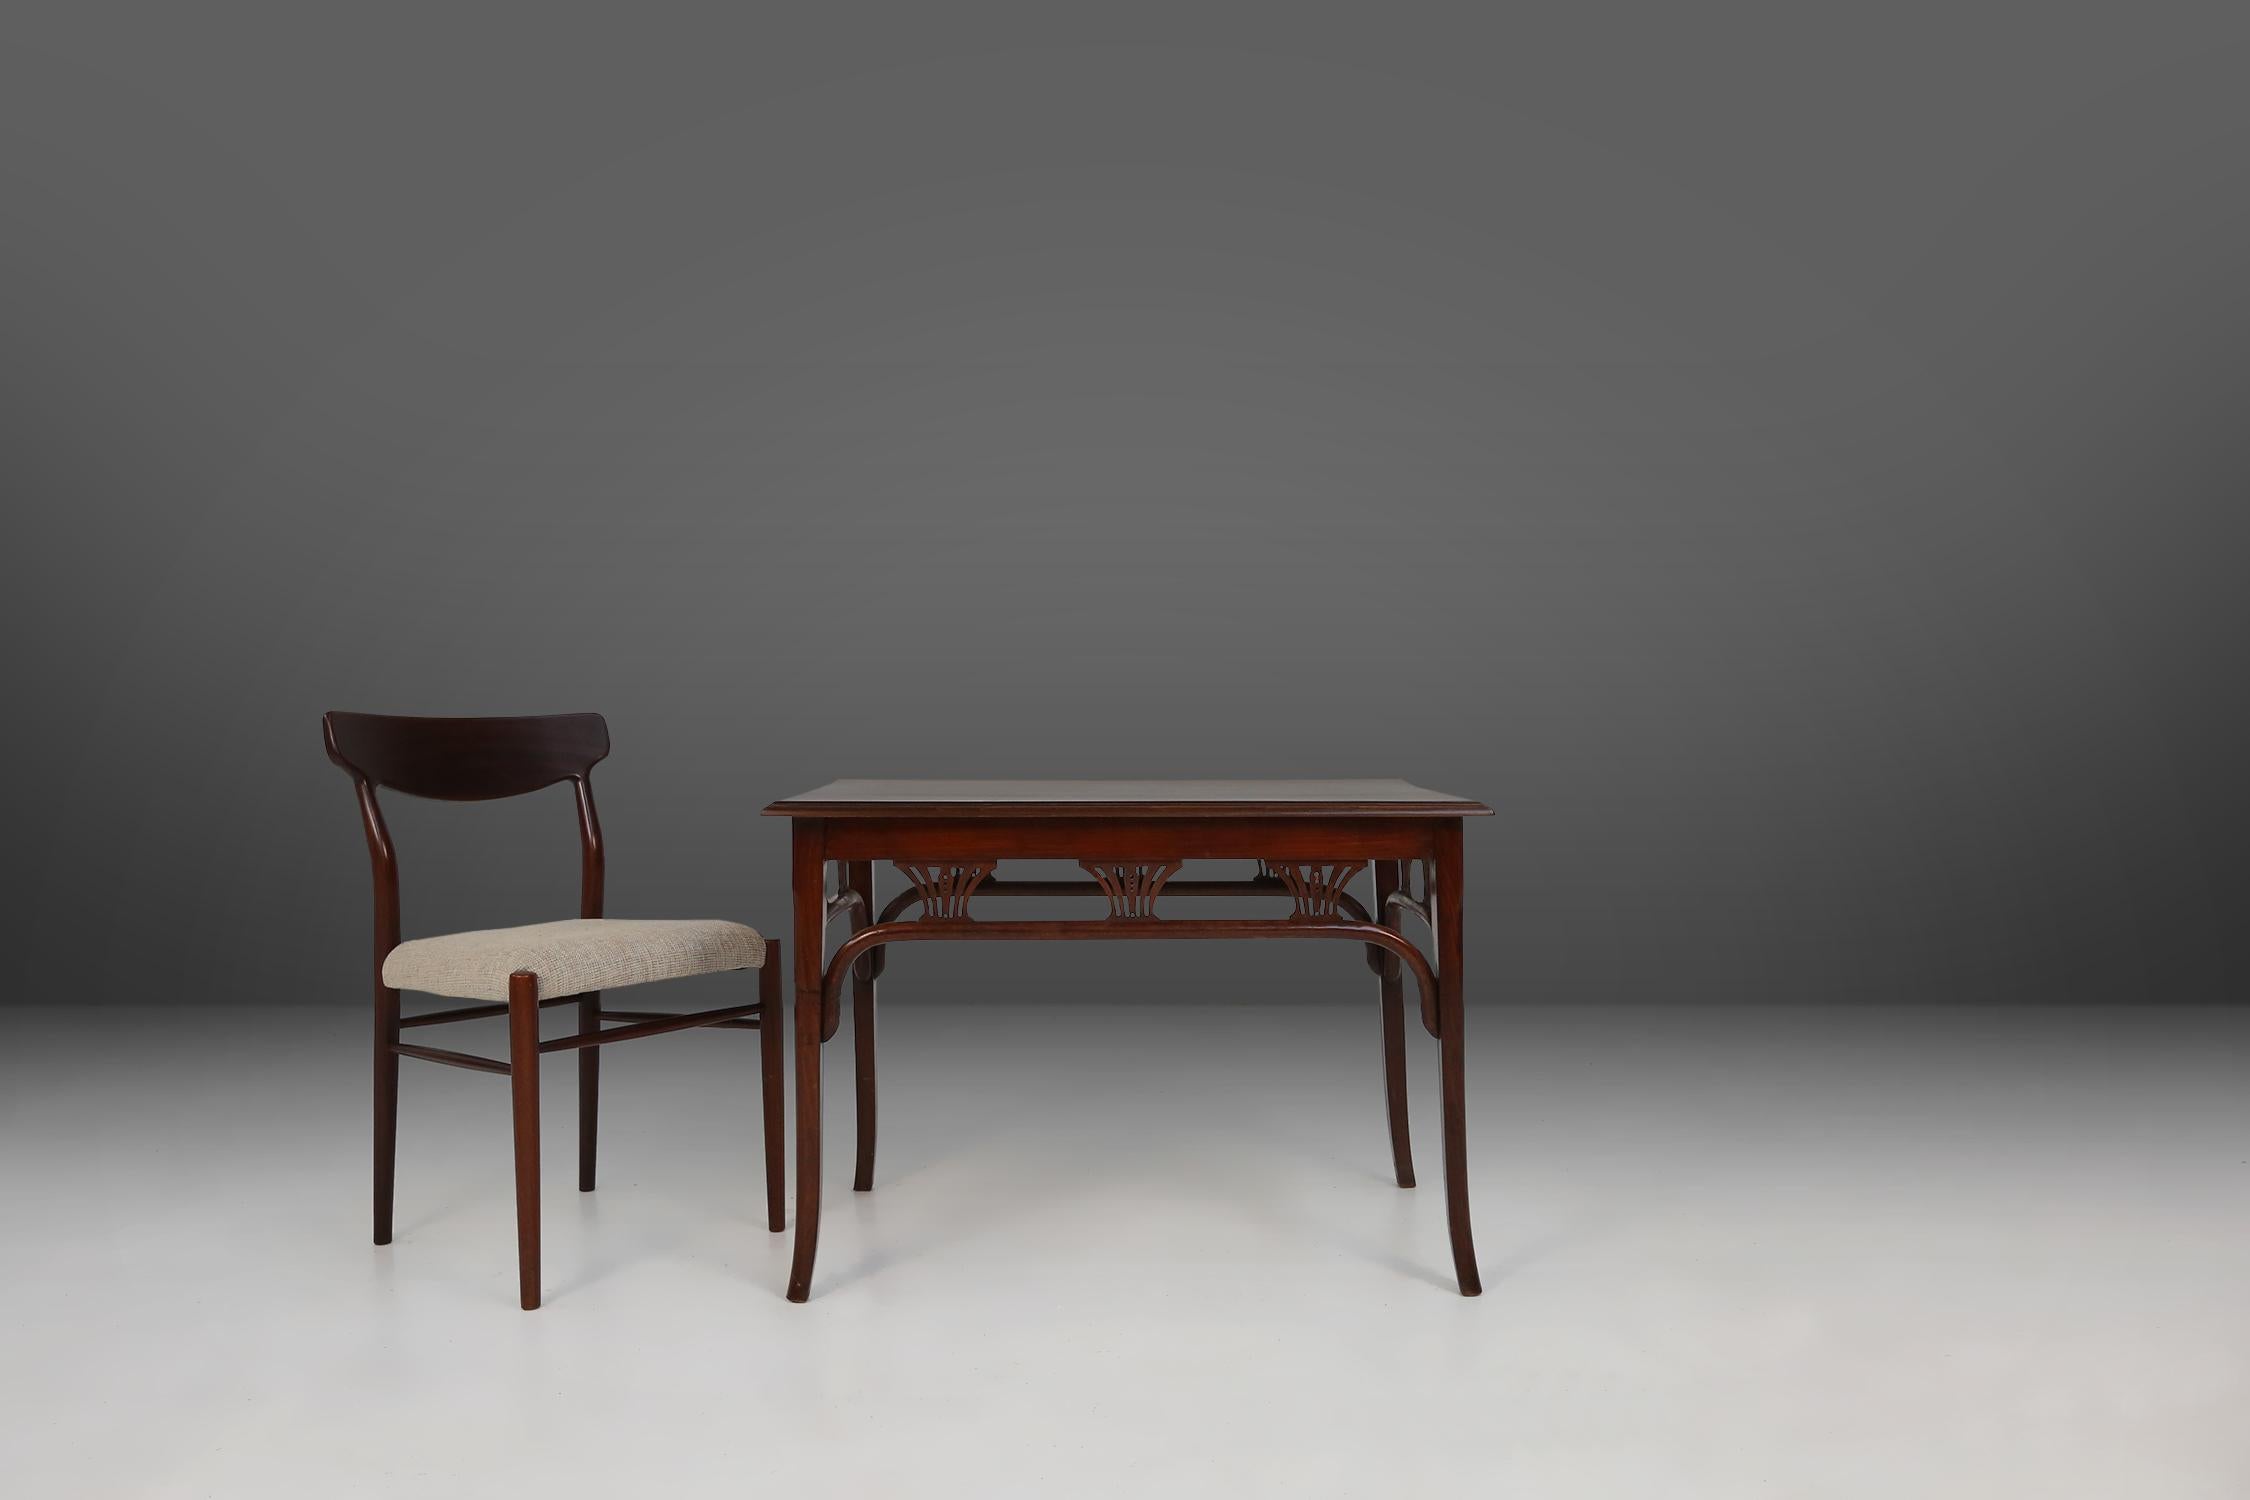 Dieser schöne Beistelltisch von Jacob & Josef Kohn aus dem Jahr 1916 ist ein wahres Prunkstück in jeder Einrichtung. Mit einer Holzplatte und einem Holzfuß strahlt dieser Tisch pure Eleganz und Klasse aus. Das zeitlose Design passt sowohl zu